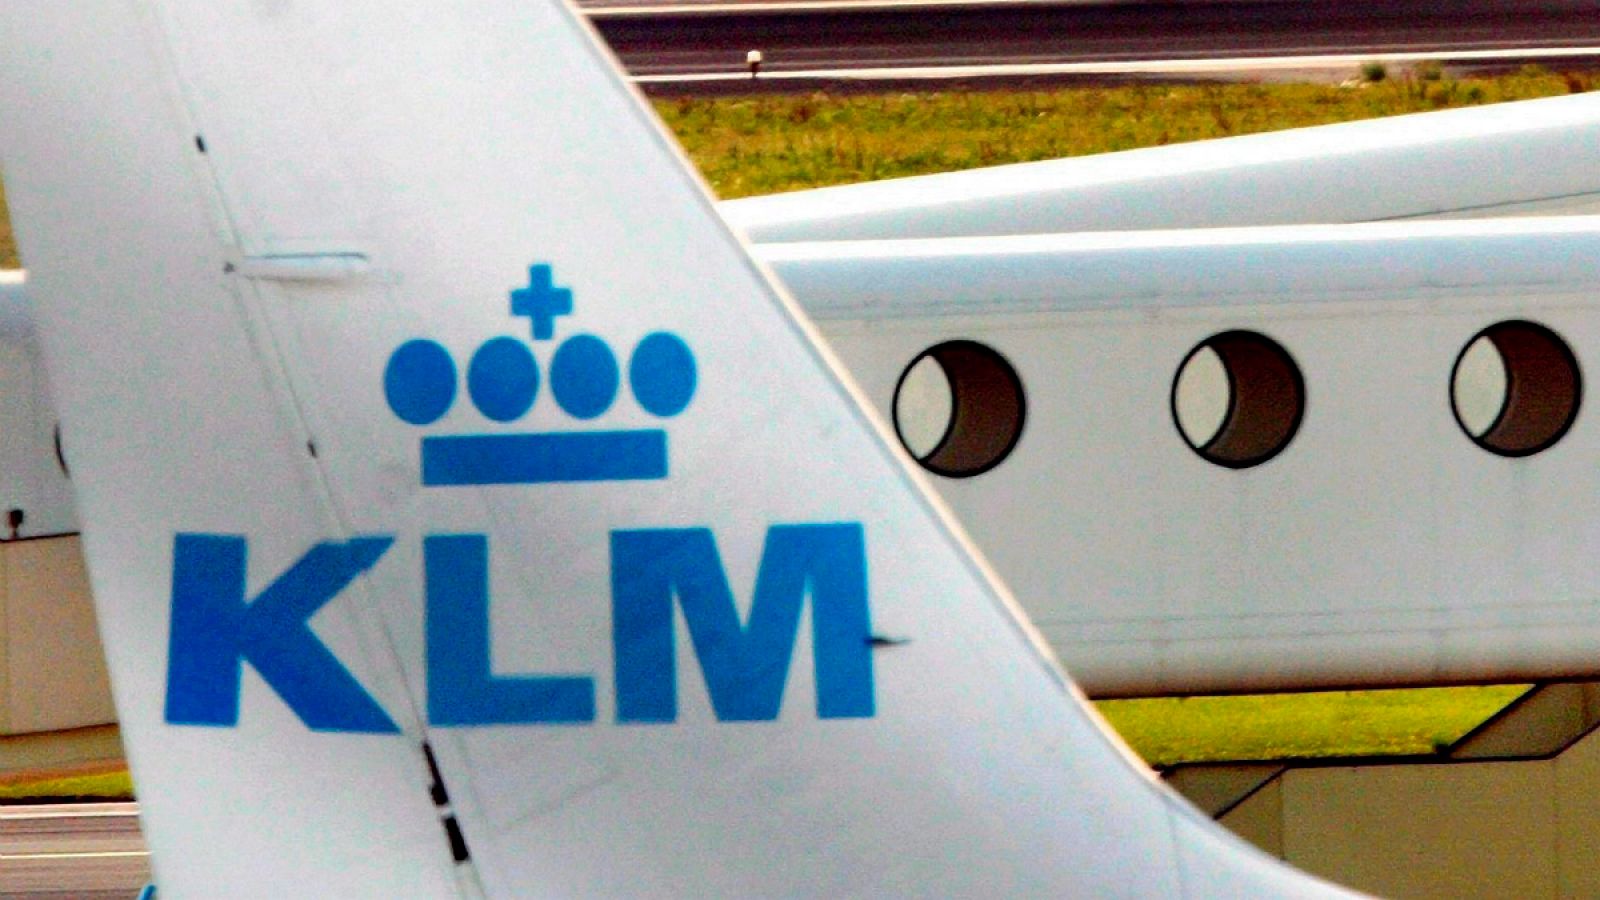 Aviones de KLM en el aeropuerto holandés de Schiphol